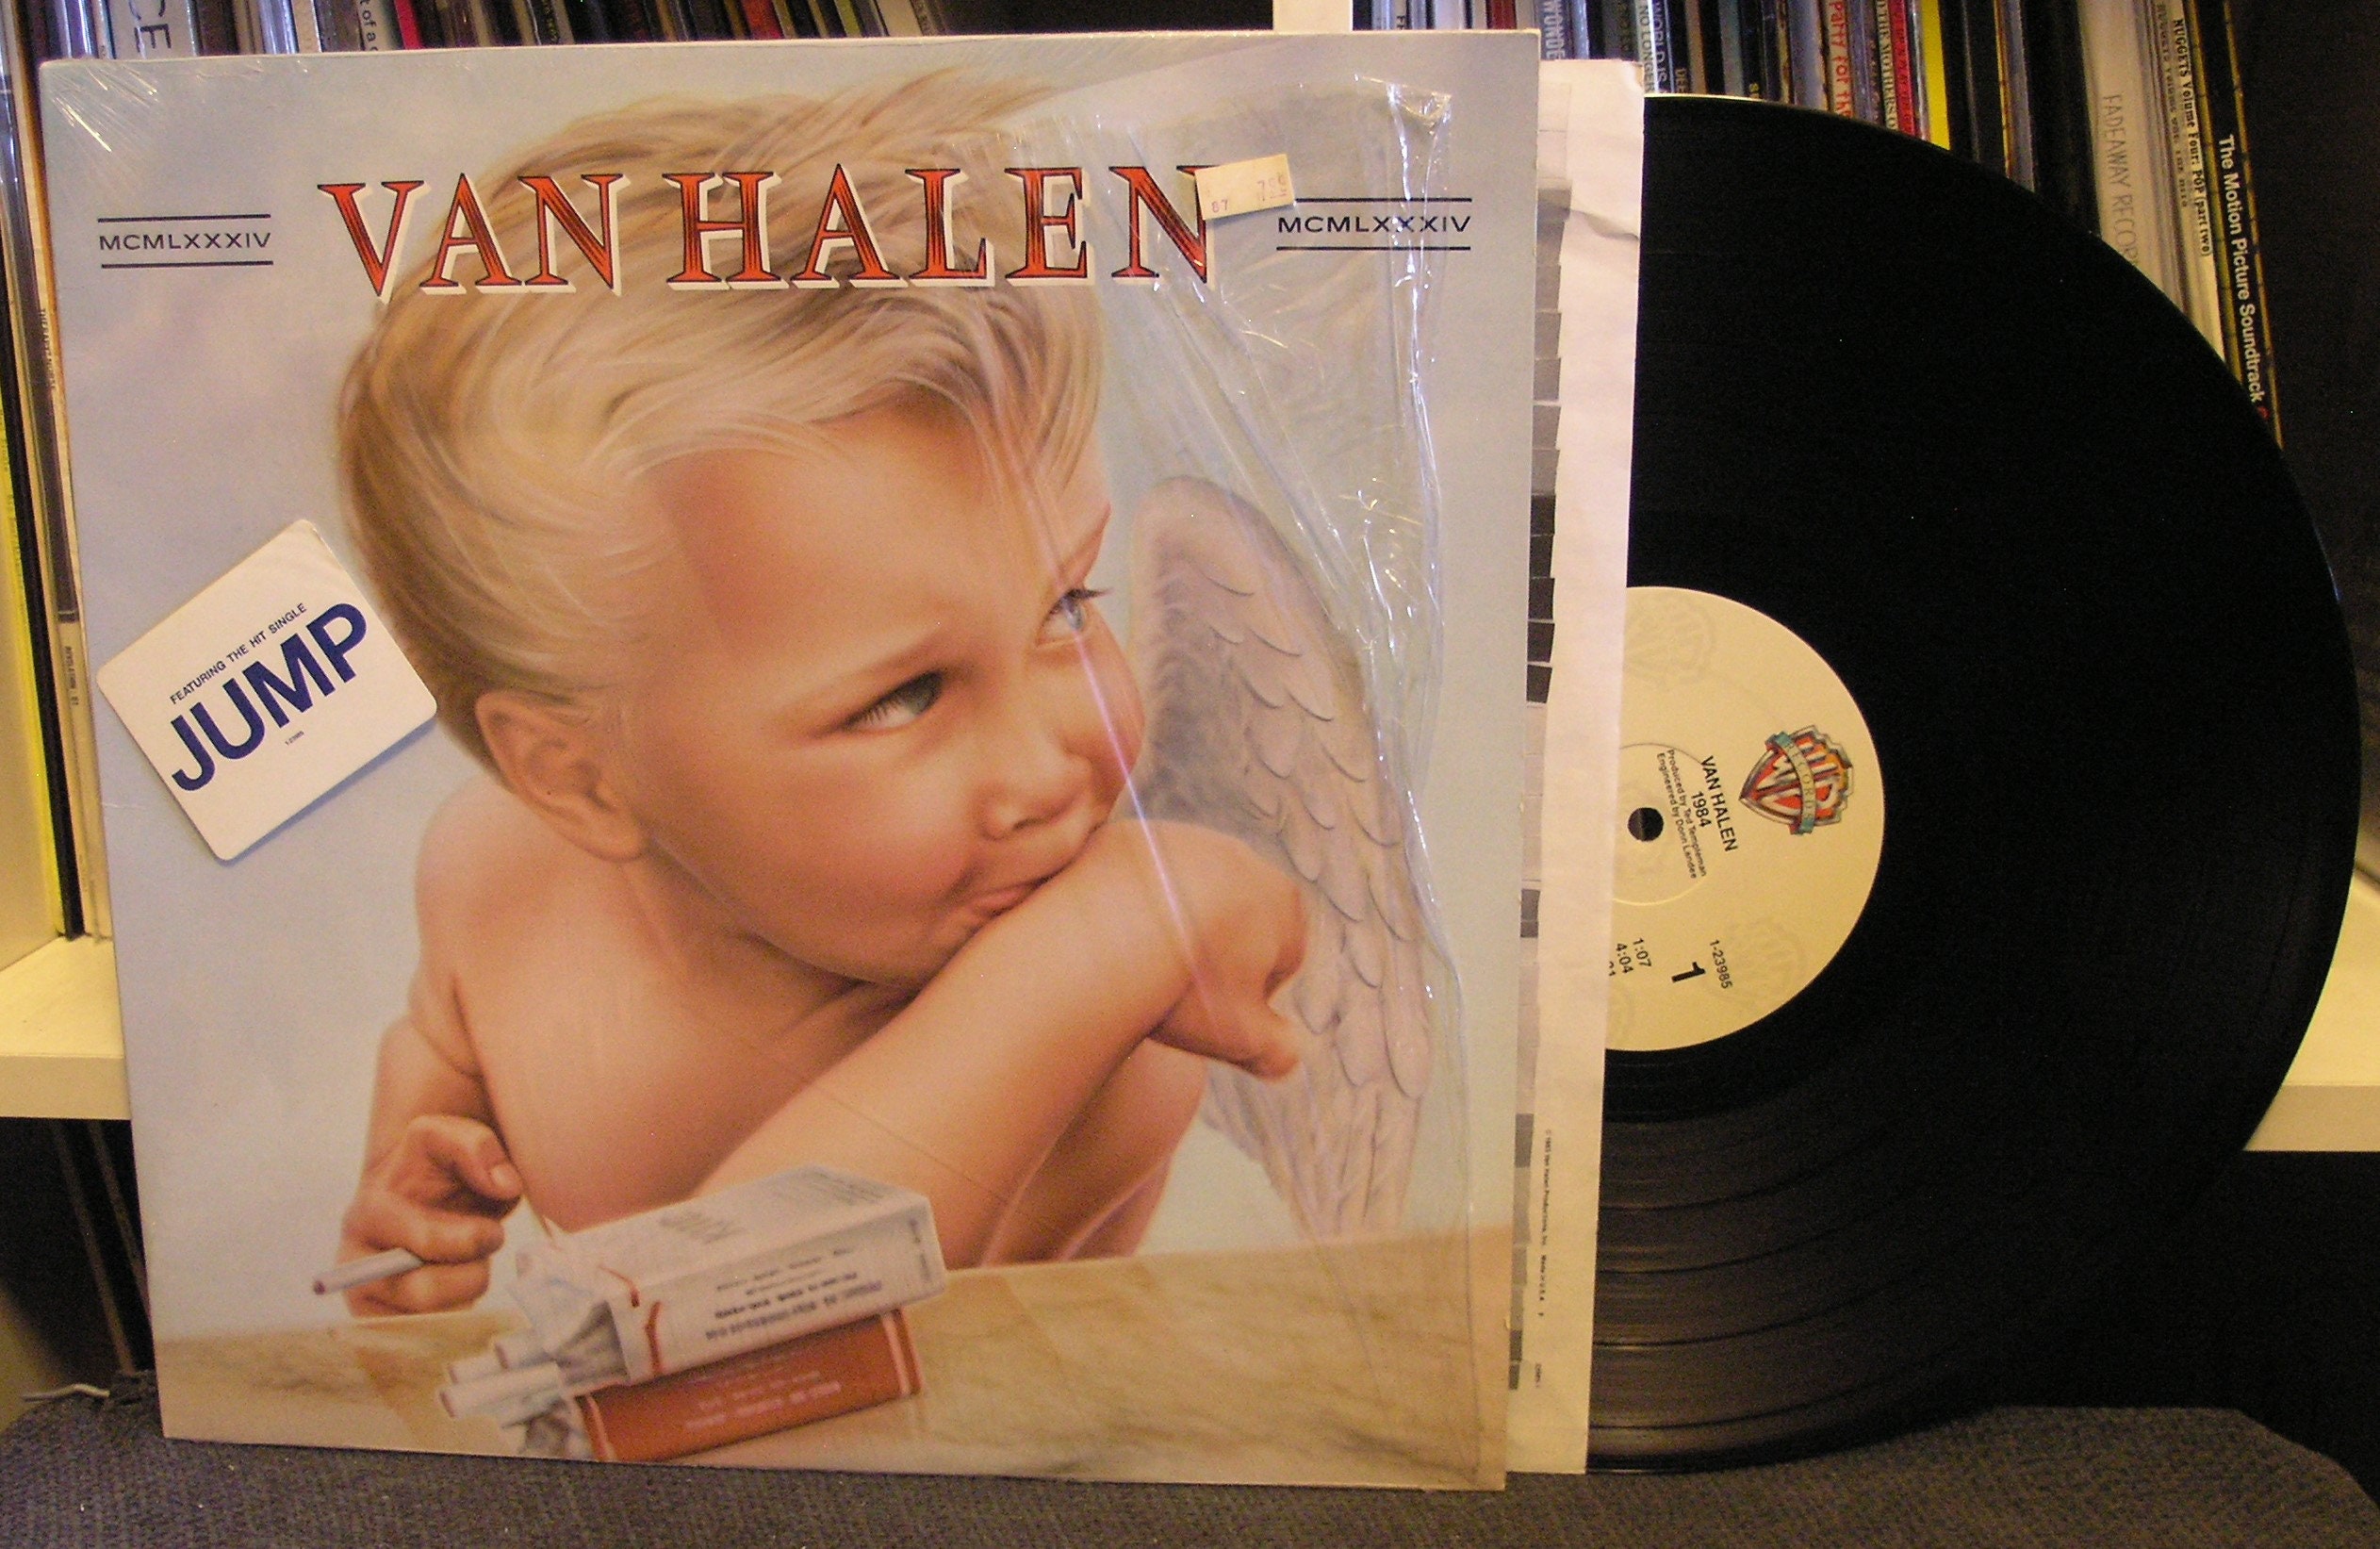 Van Halen - 1984 - Vinyl